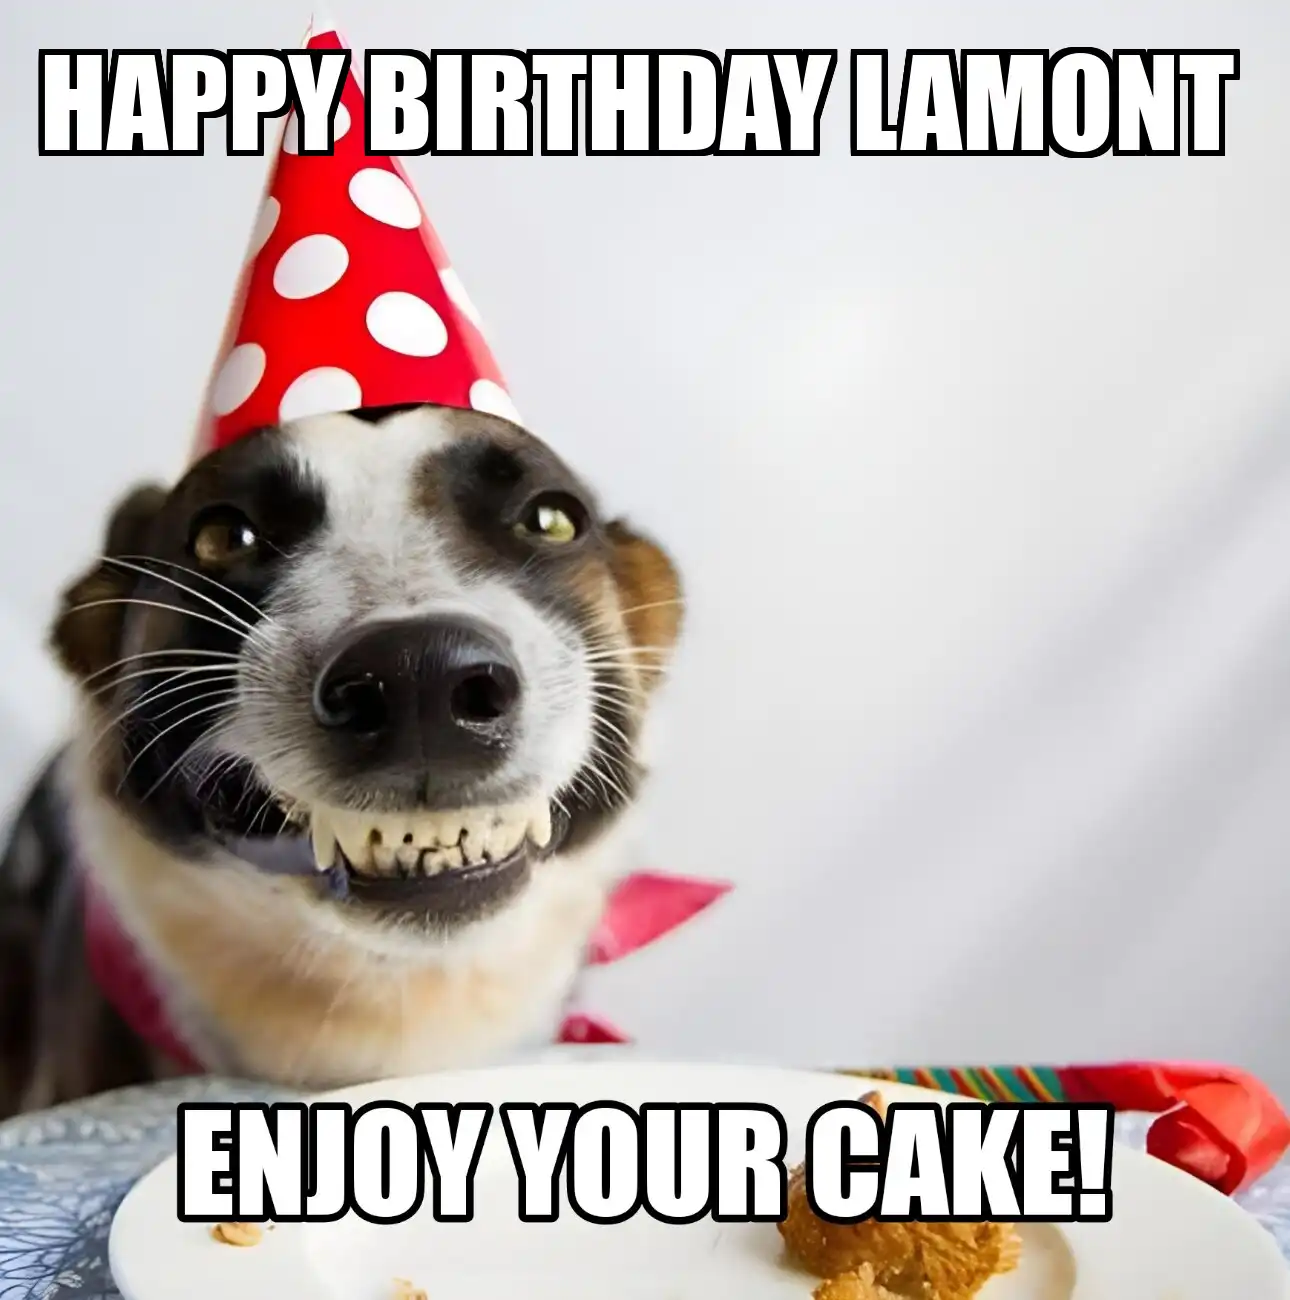 Happy Birthday Lamont Enjoy Your Cake Dog Meme